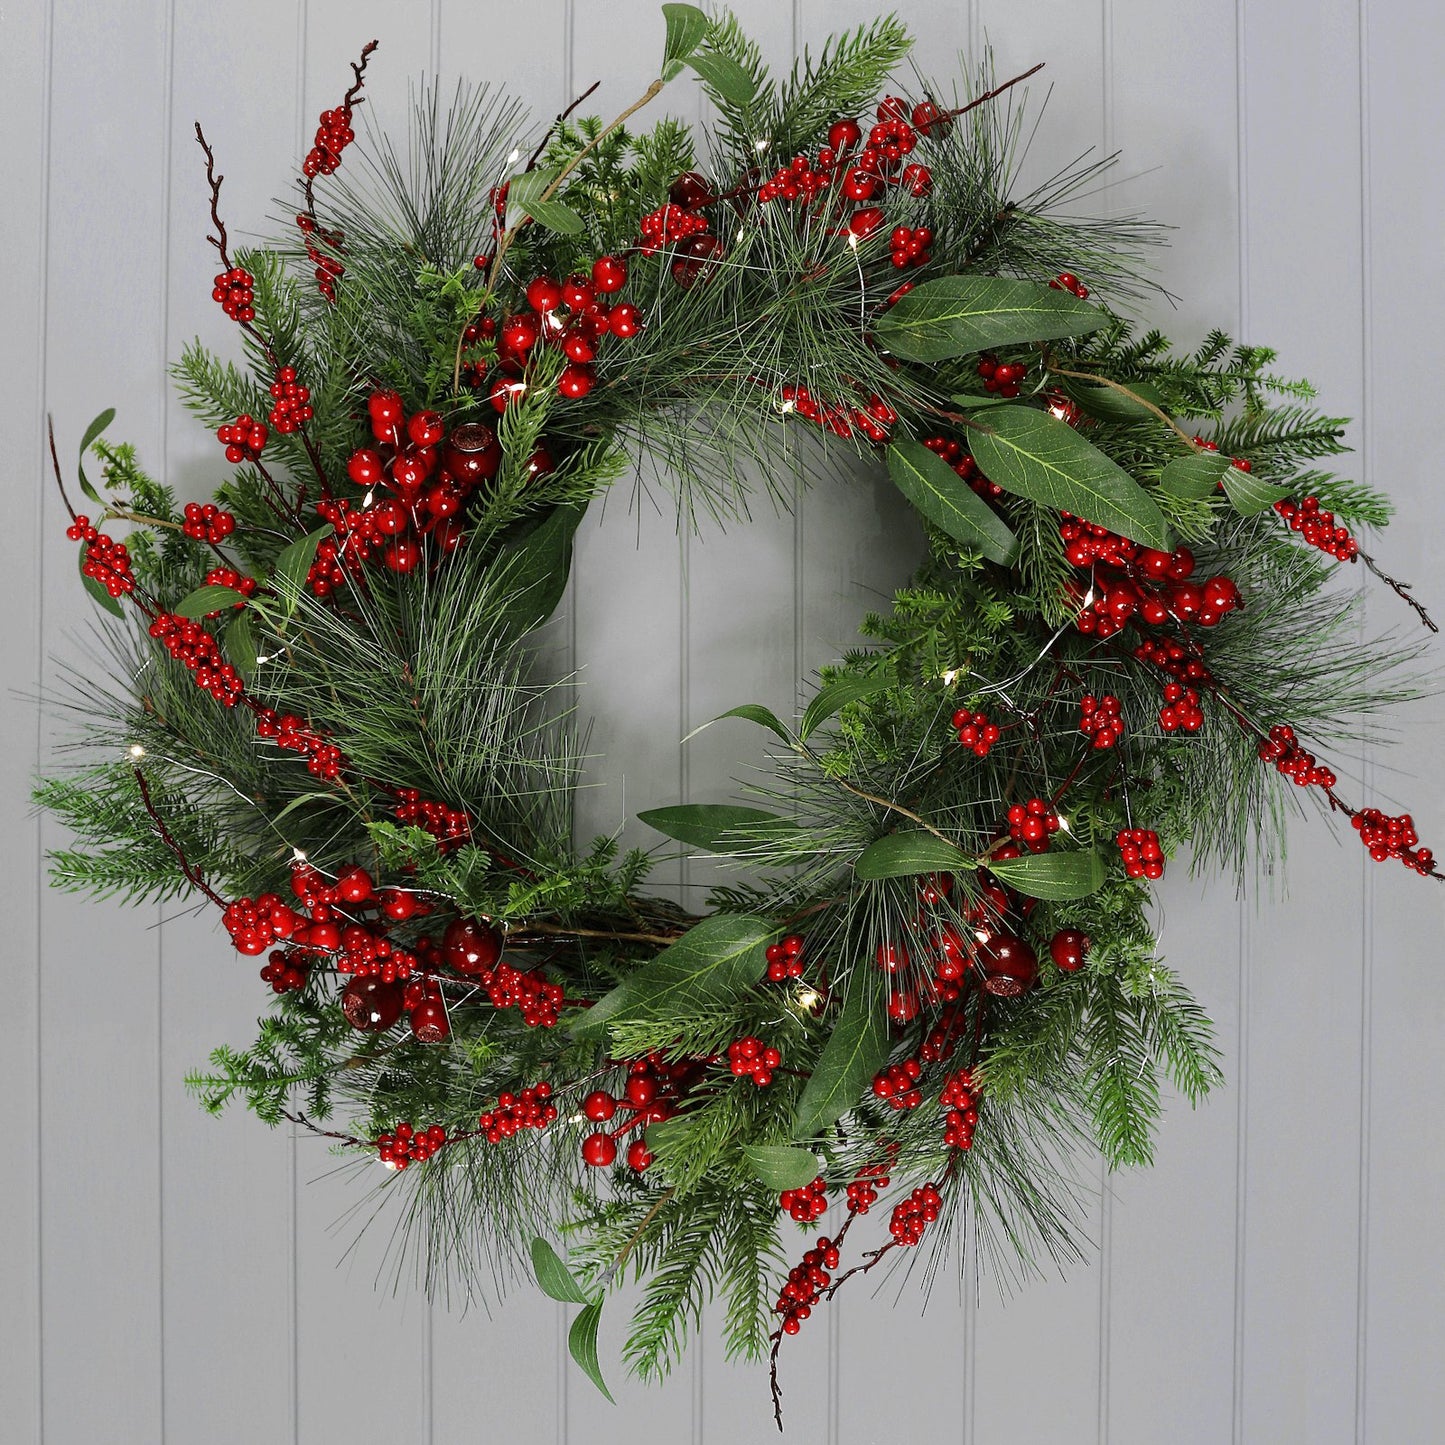 Mr Crimbo 60cm Light Up Christmas Wreath Natural Red Berries - MrCrimbo.co.uk -XS7611 - -